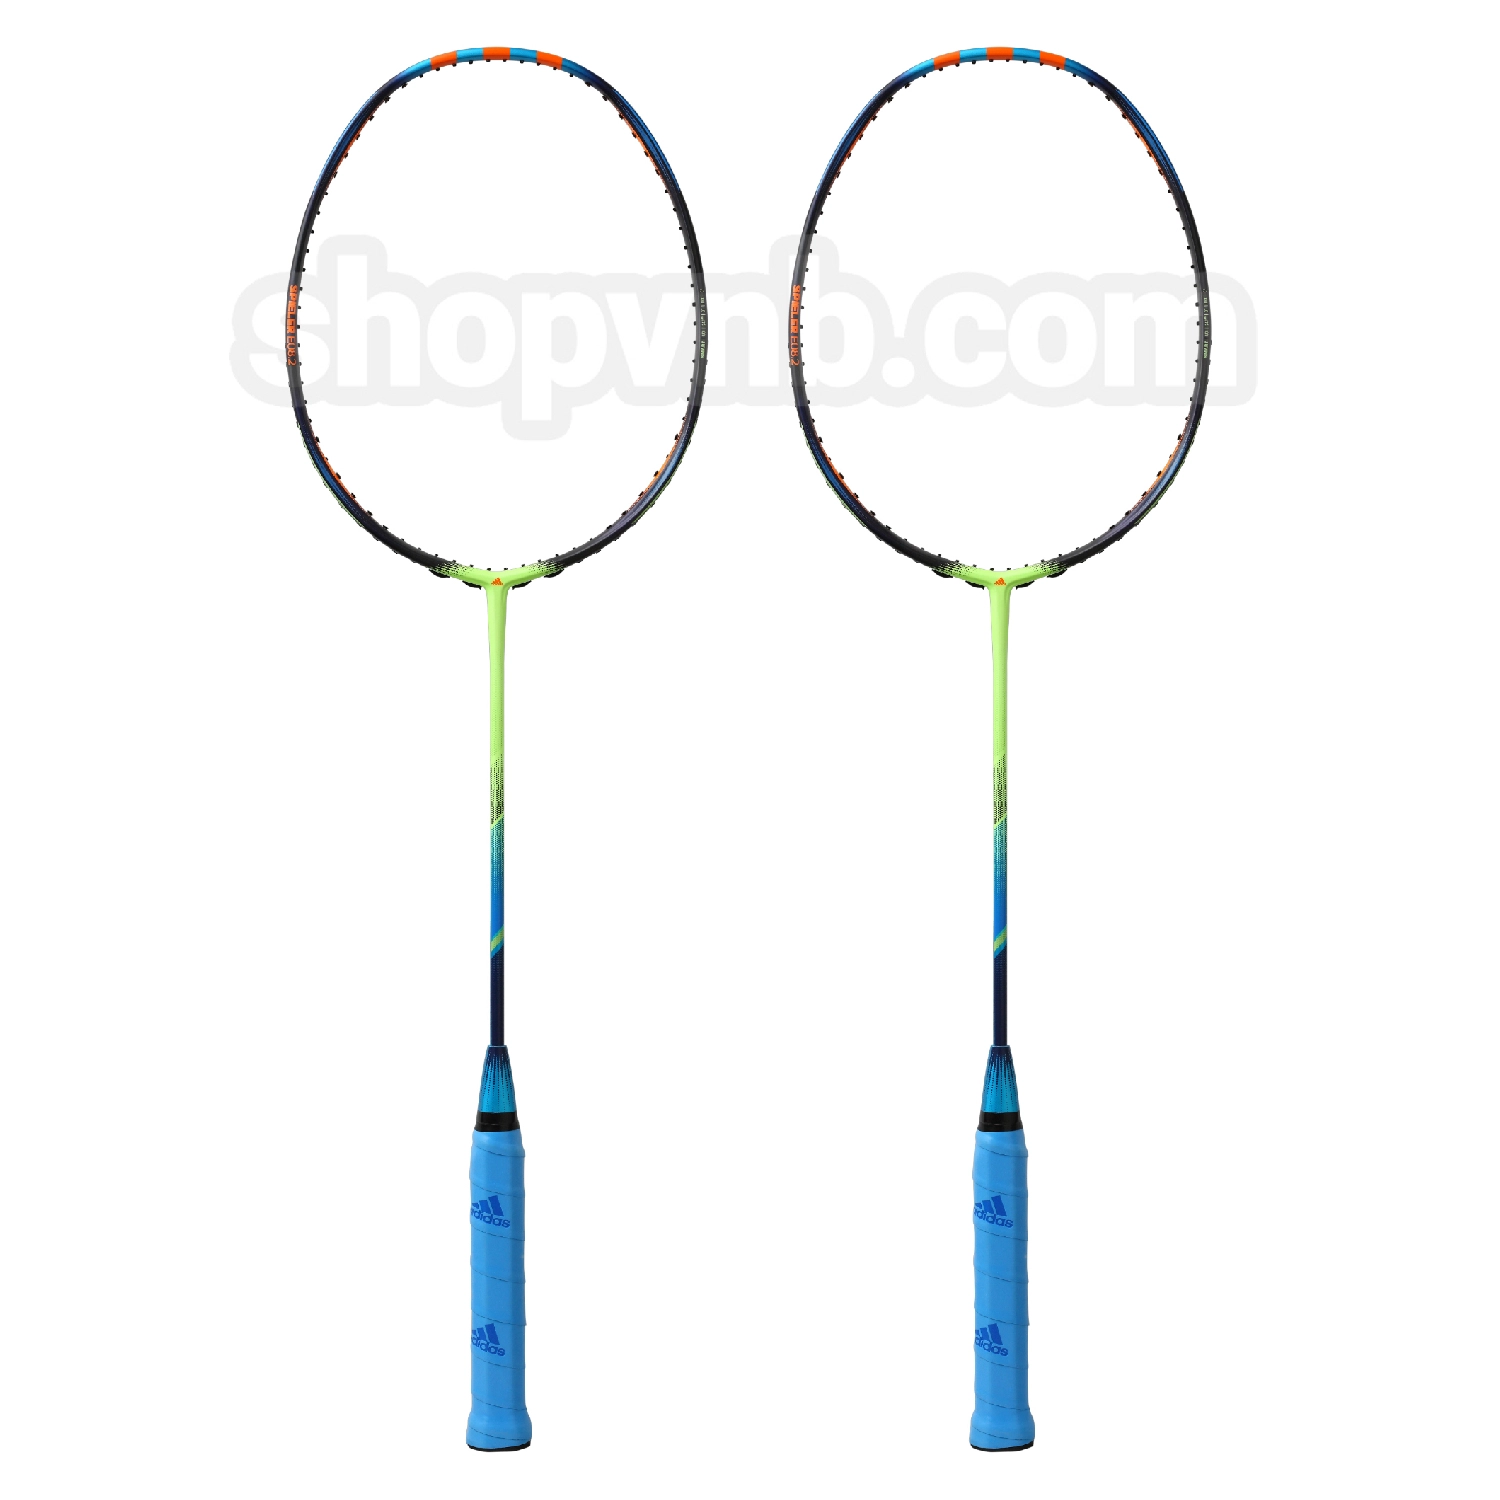 Cặp vợt cầu lông Adidas Spieler E08.2 Signal Green - Đen xanh lá chính hãng